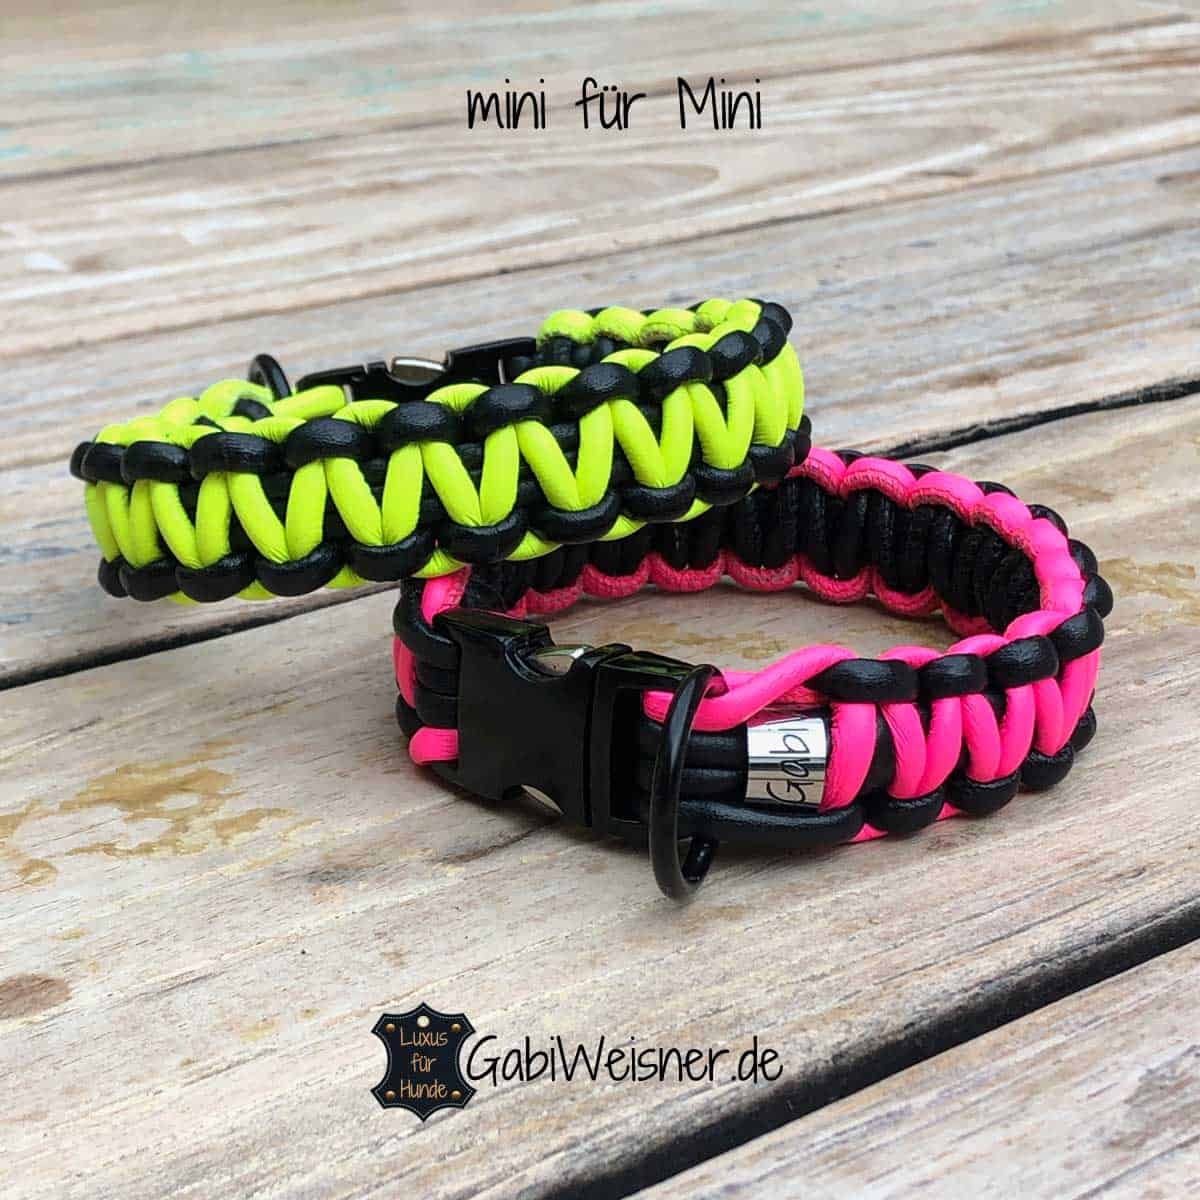 Hundehalsband mit Klickverschluss für kleine Hunde, Leder 2 cm breit.